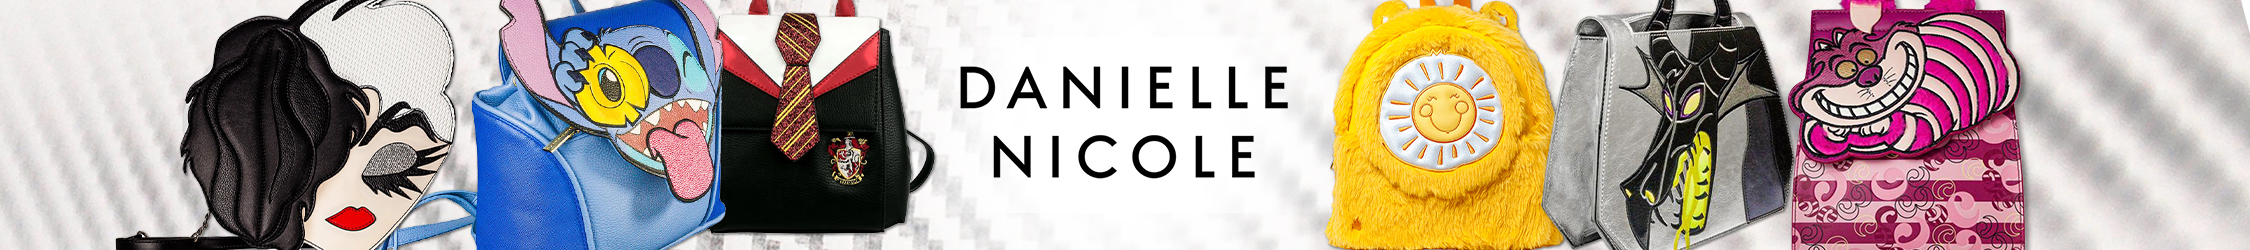 DanielleNicole